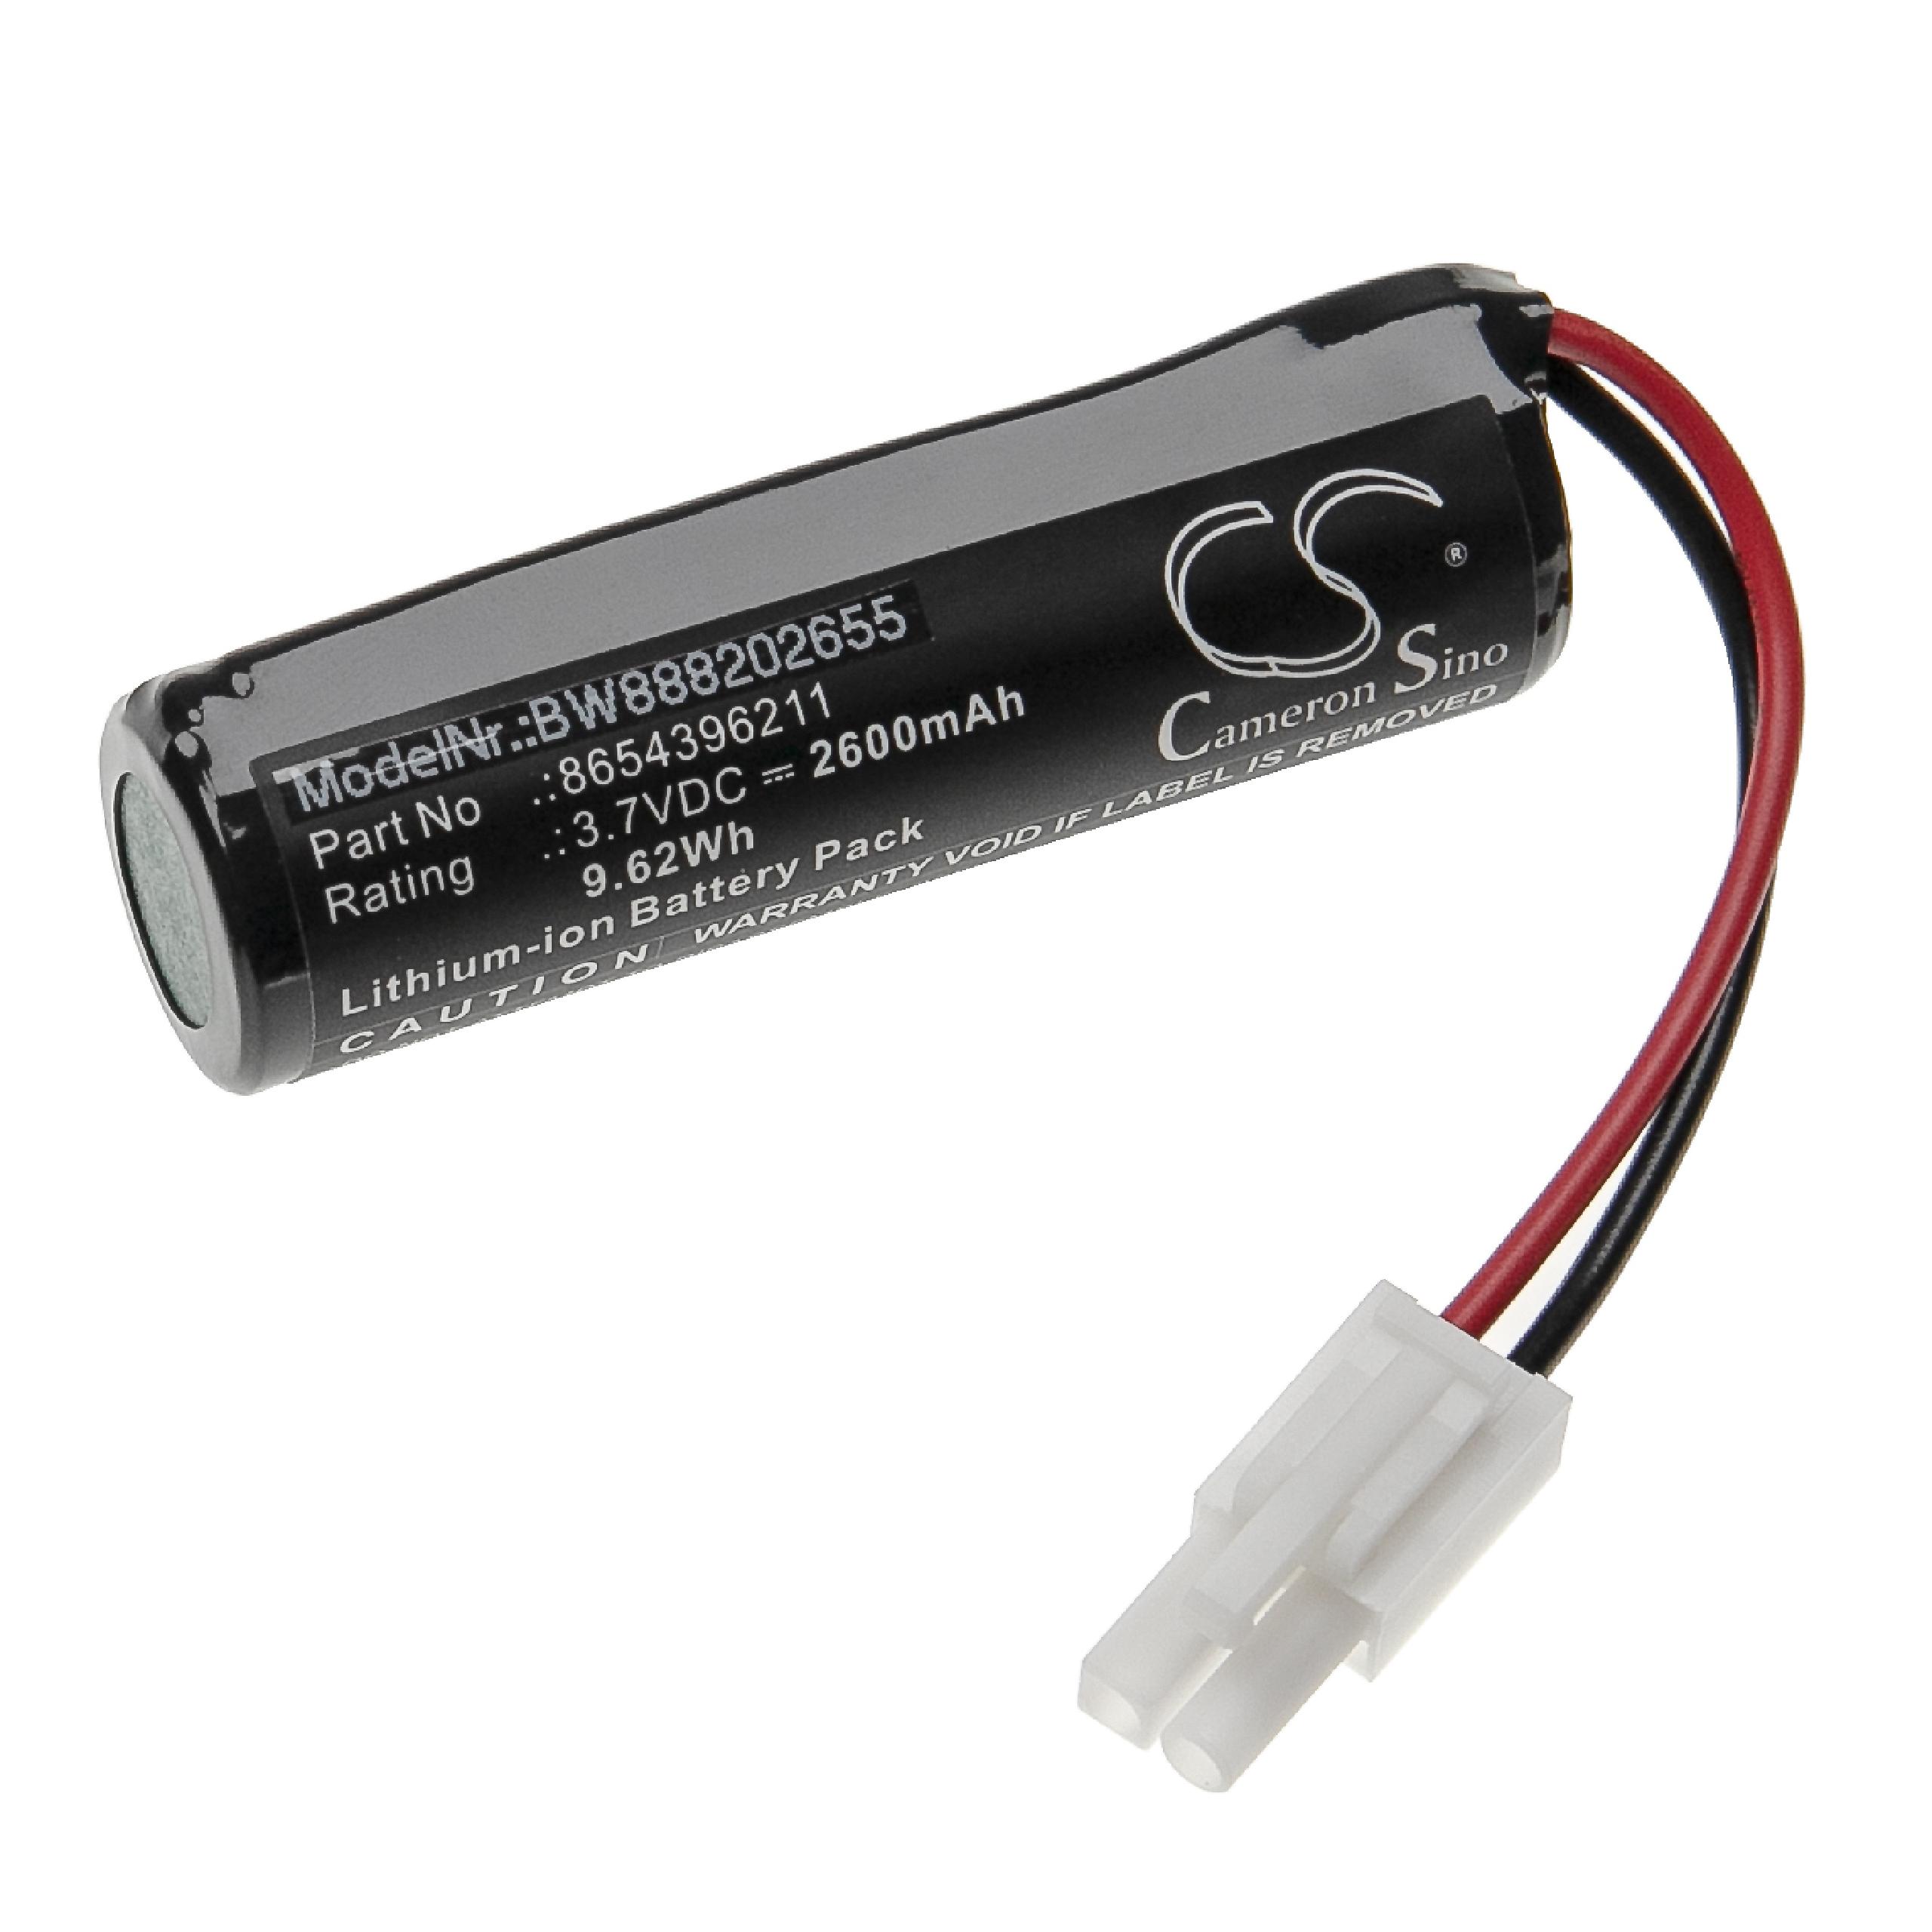 Batterie remplace Vileda 8654396211 pour balai électrique - 2600mAh 3,7V Li-ion